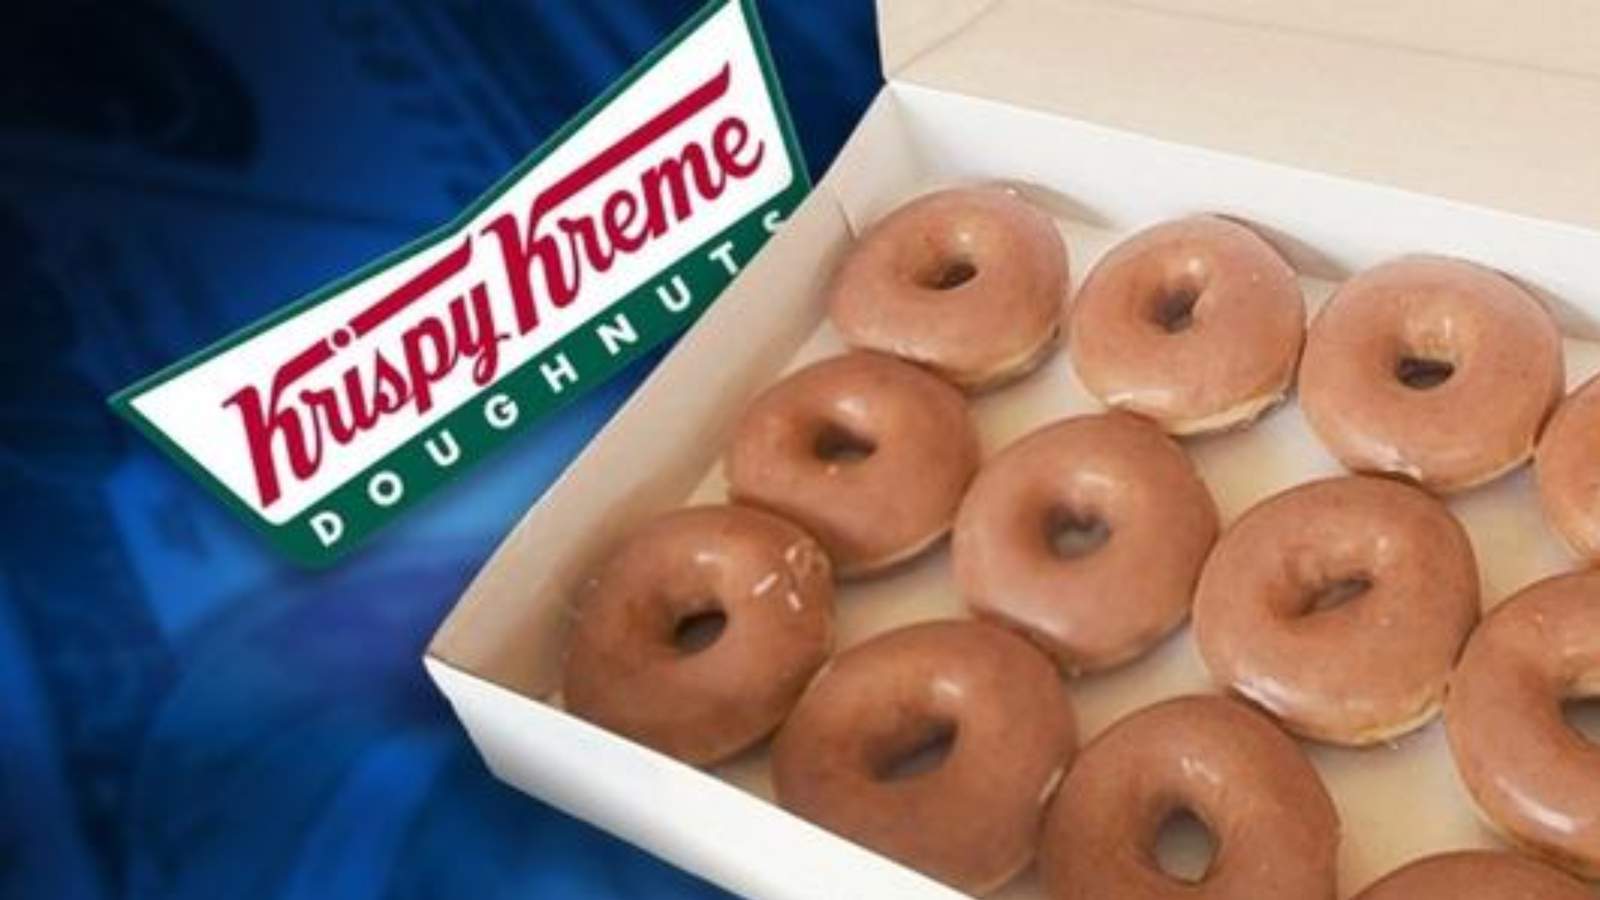 Krispy Kreme announces delivery service